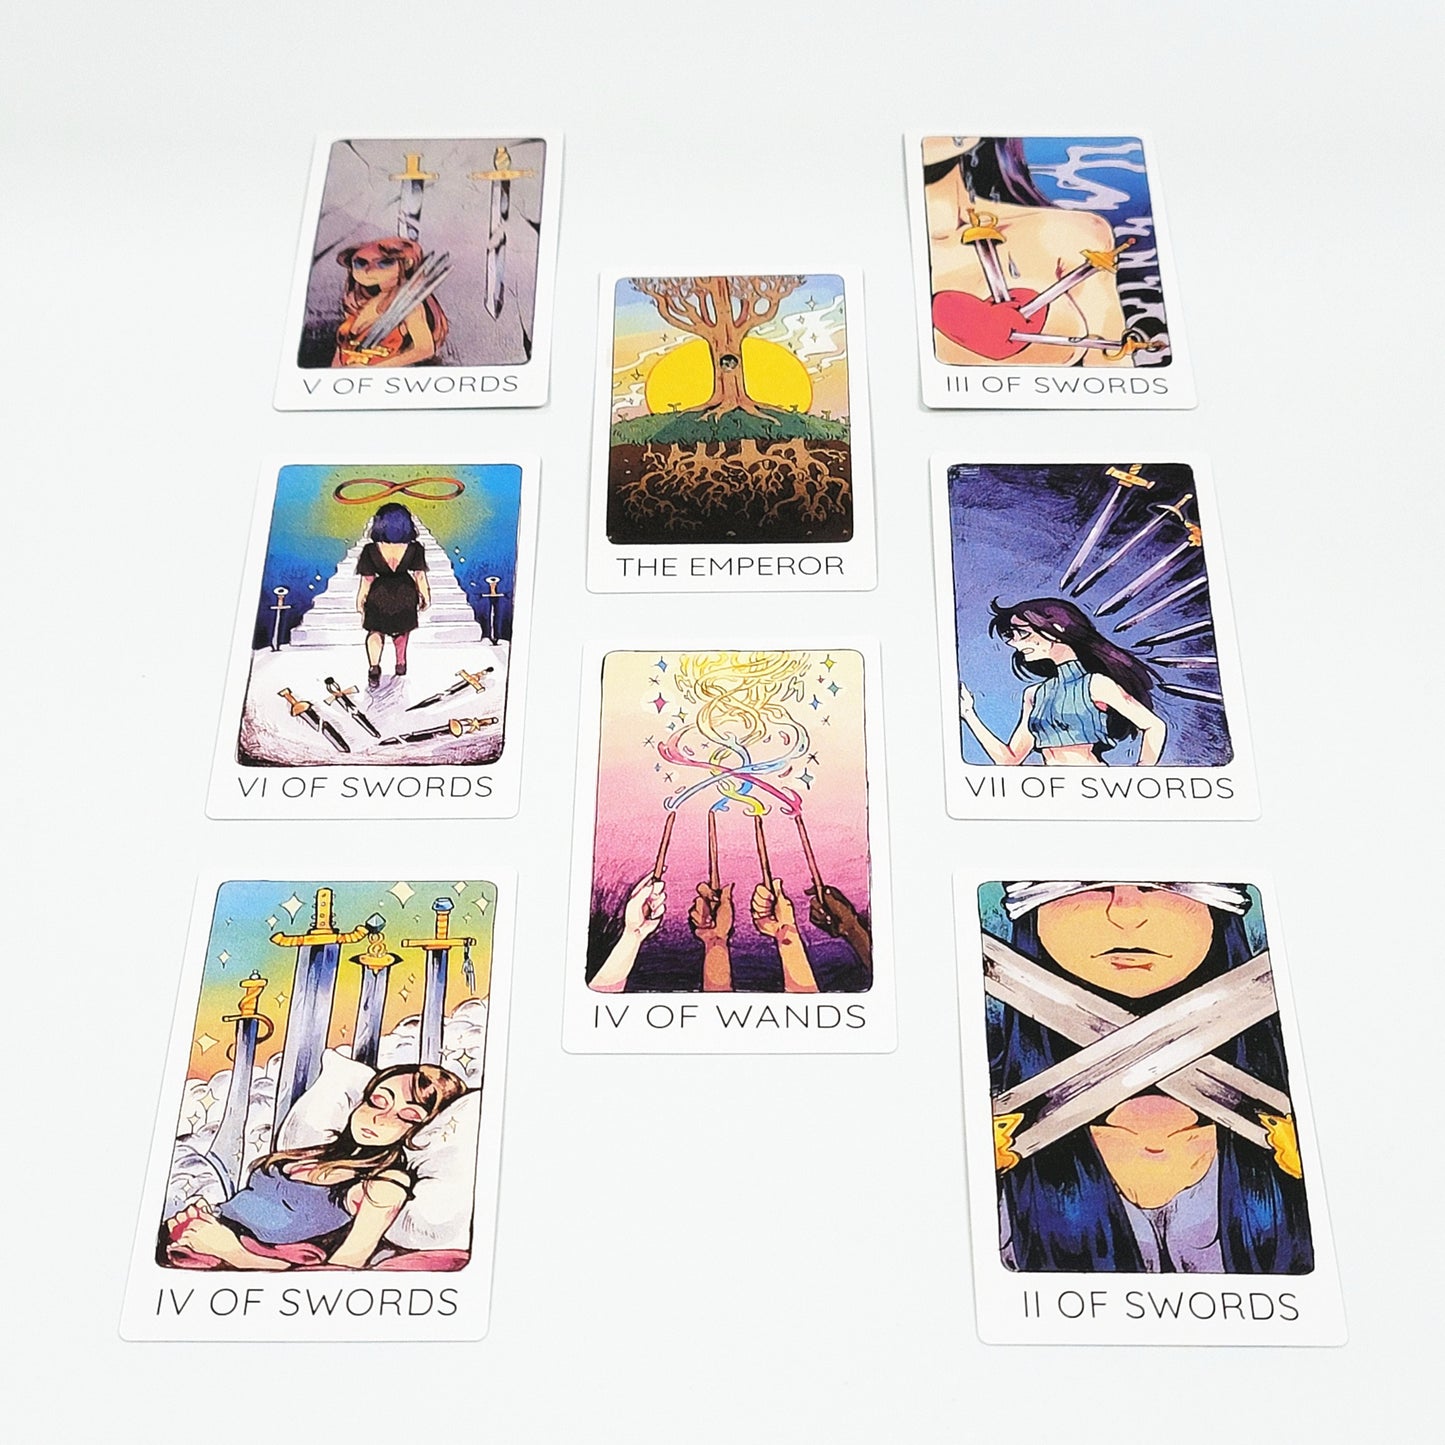 Tarot del tercer ojo de Britt | Inconsciente | Adivinación, tarjetas de orientación sobre relaciones, tarjetas de pasión e intimidad